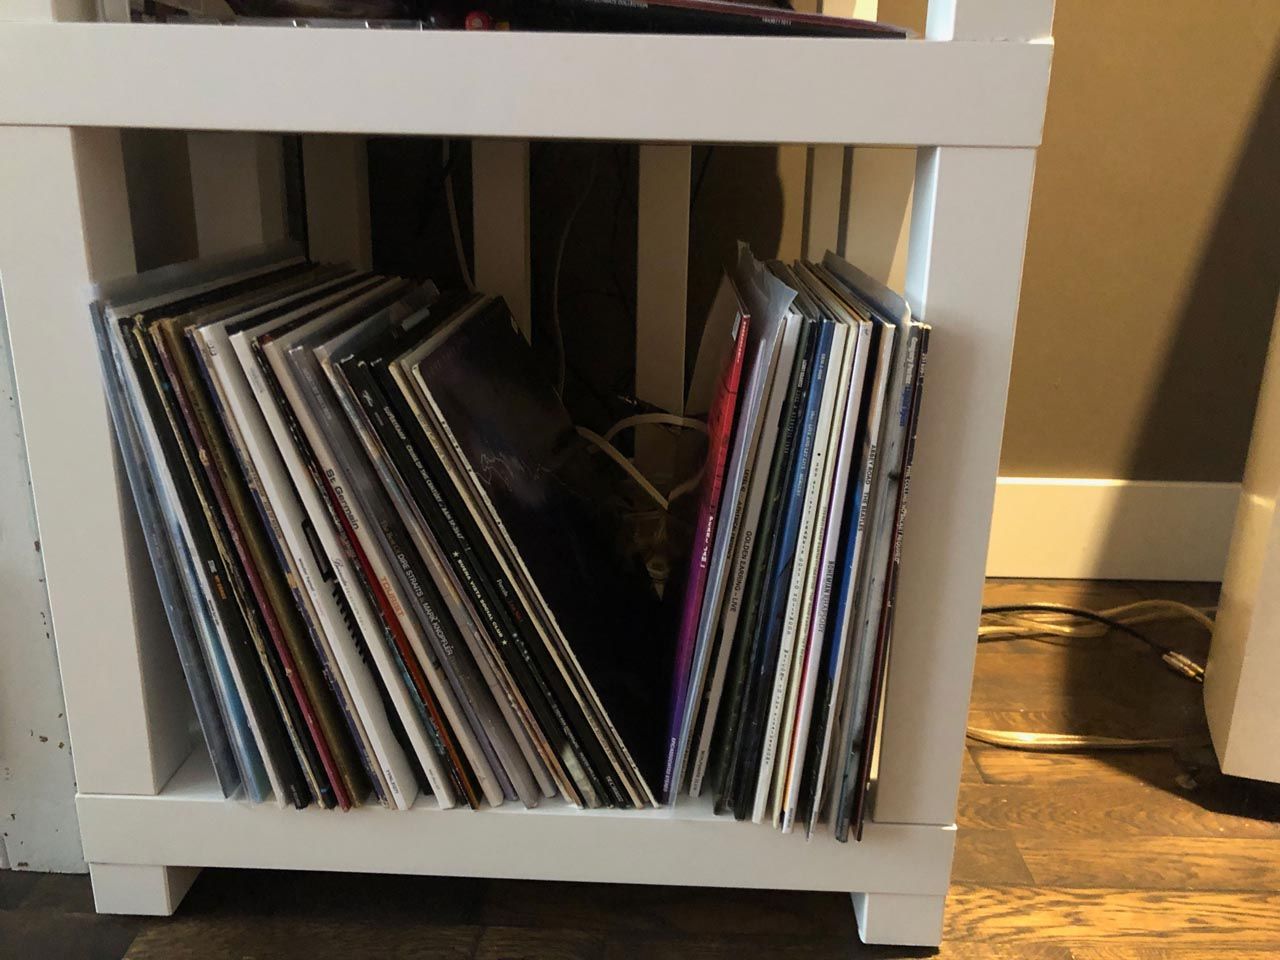 Mooie vintage LP's in DIY Ikea Lack audio rack